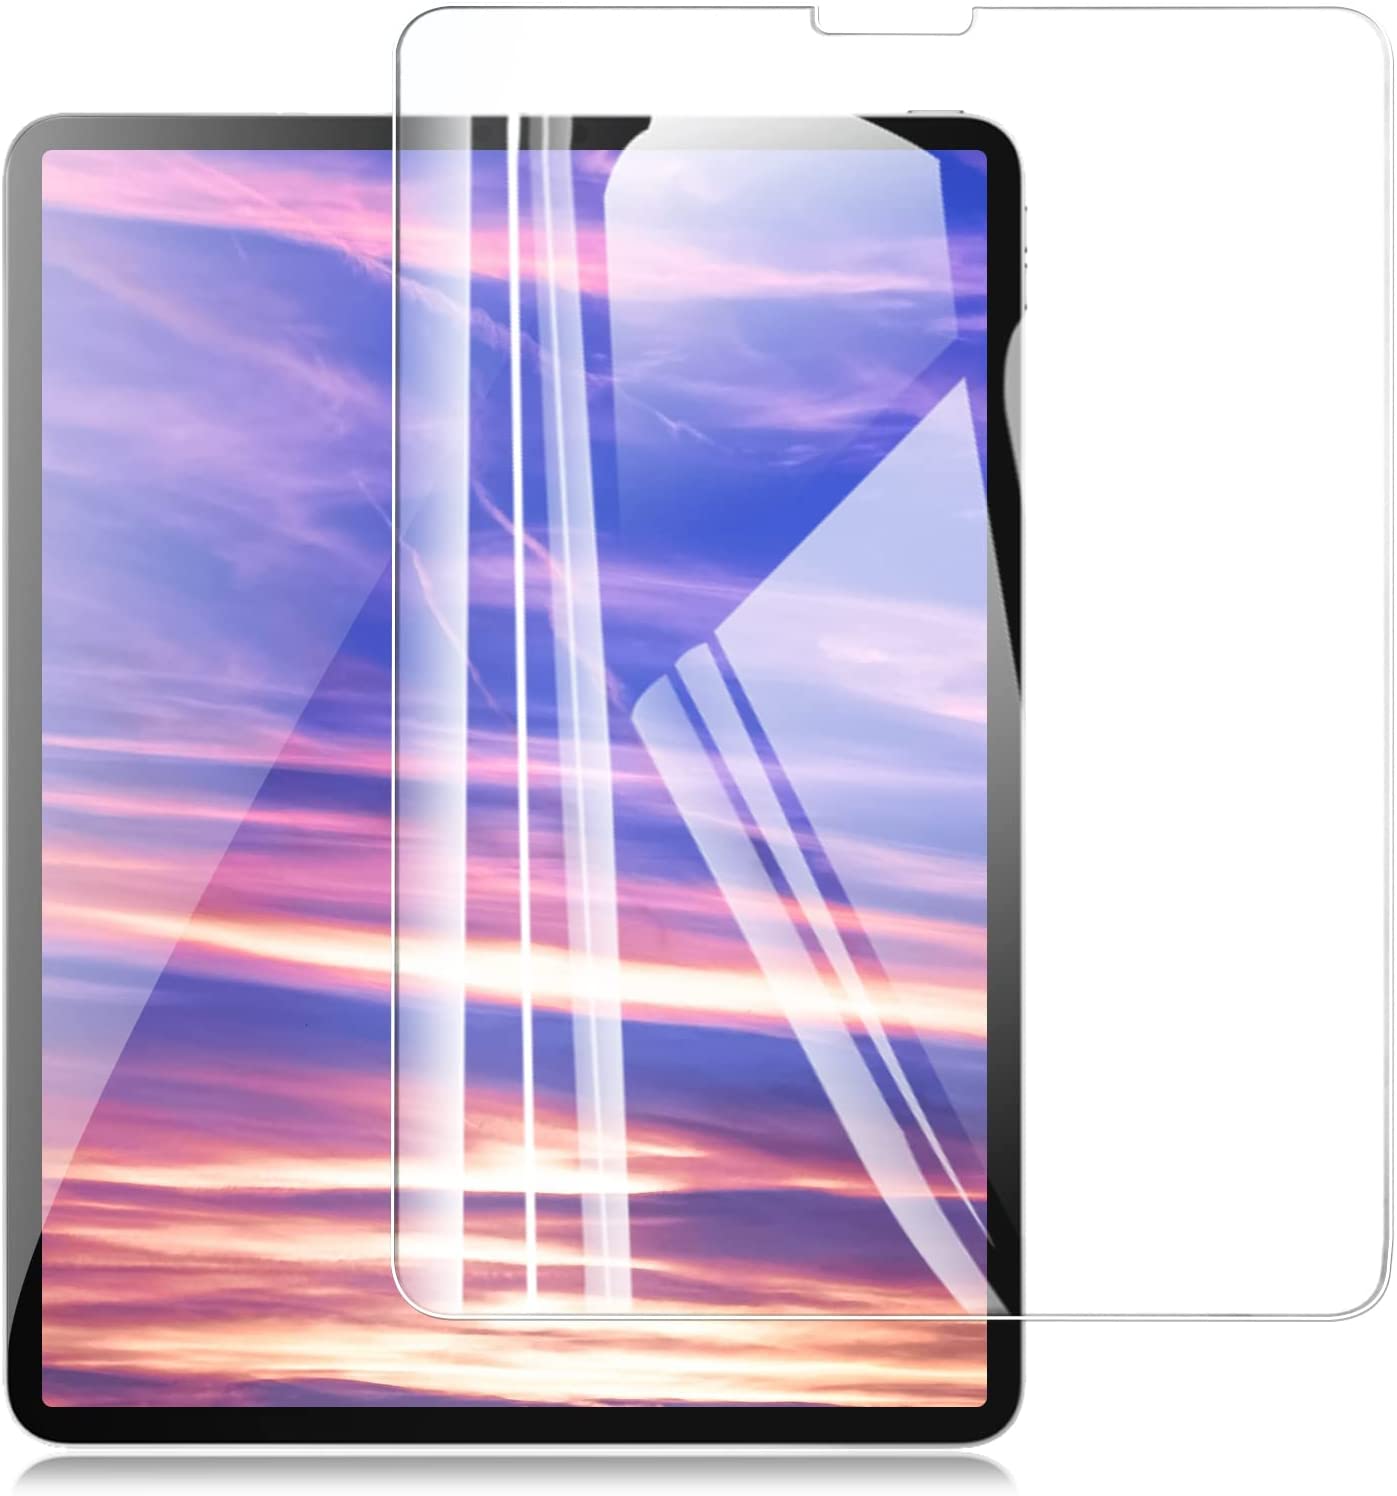 iPad Air 5 フィルム 2022 第5世代 iPad Air4 iPad Pro 11 (2021 / 2020 / 2018) 用 ガラスフィルム 保護 フイルム (ipadair5世代 / 4世代 / ipadpro11)【高いタッチ感度/全面保護/貼り付け簡単/高透過率/気泡ゼロ/硬度9H】【2枚セット】